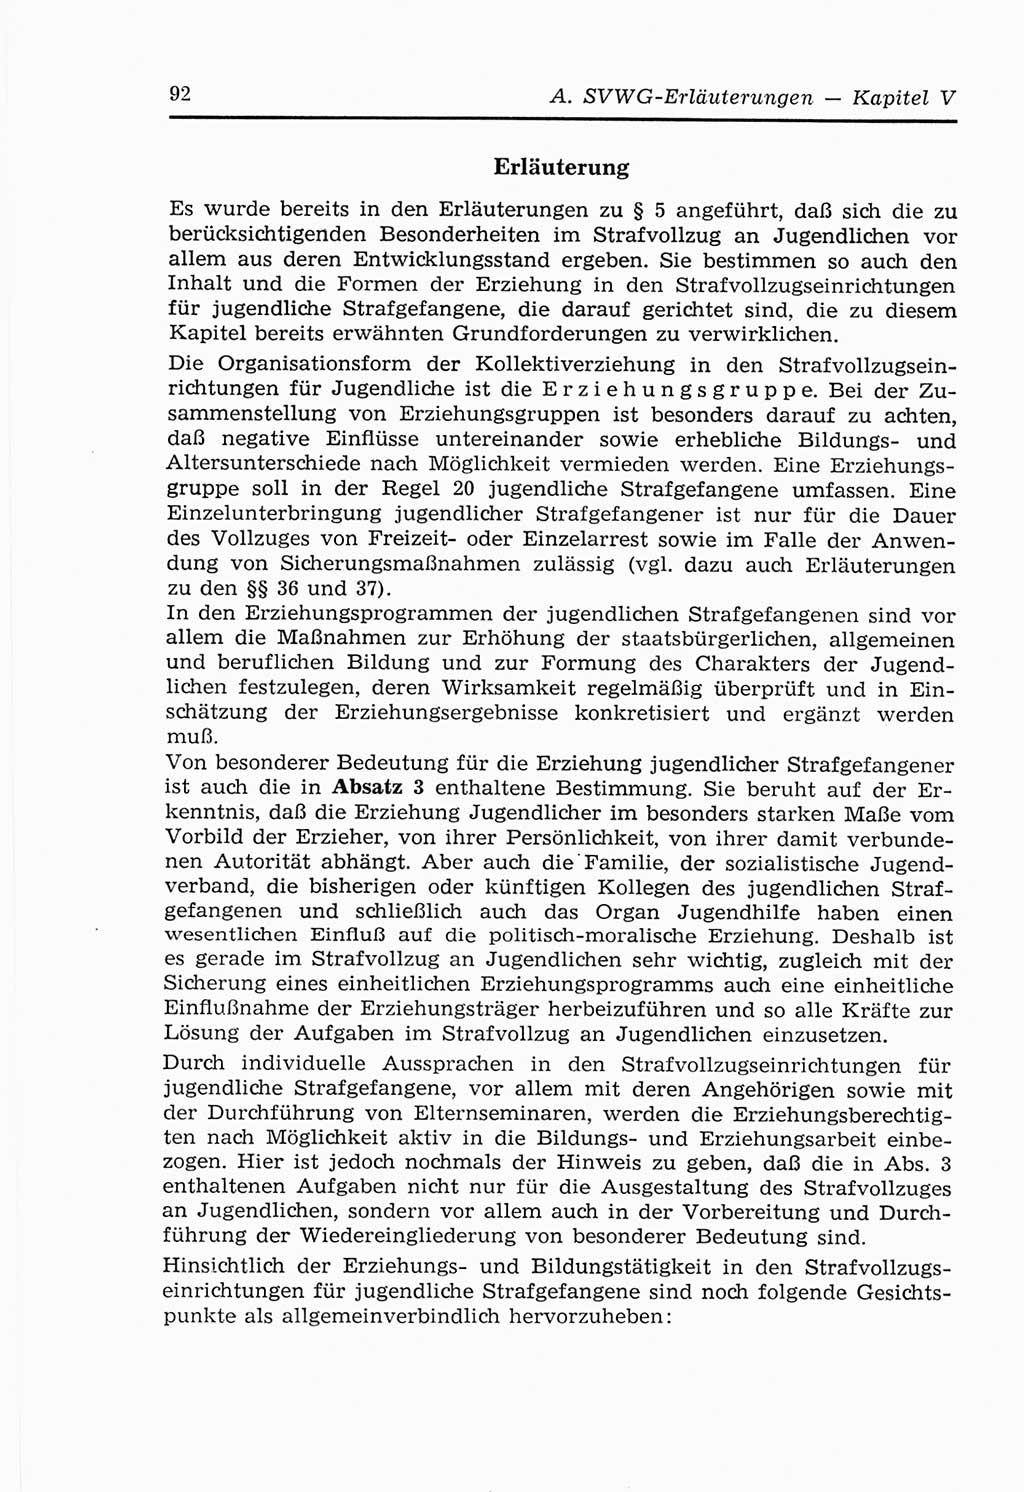 Strafvollzugs- und Wiedereingliederungsgesetz (SVWG) der Deutschen Demokratischen Republik (DDR) 1968, Seite 92 (SVWG DDR 1968, S. 92)